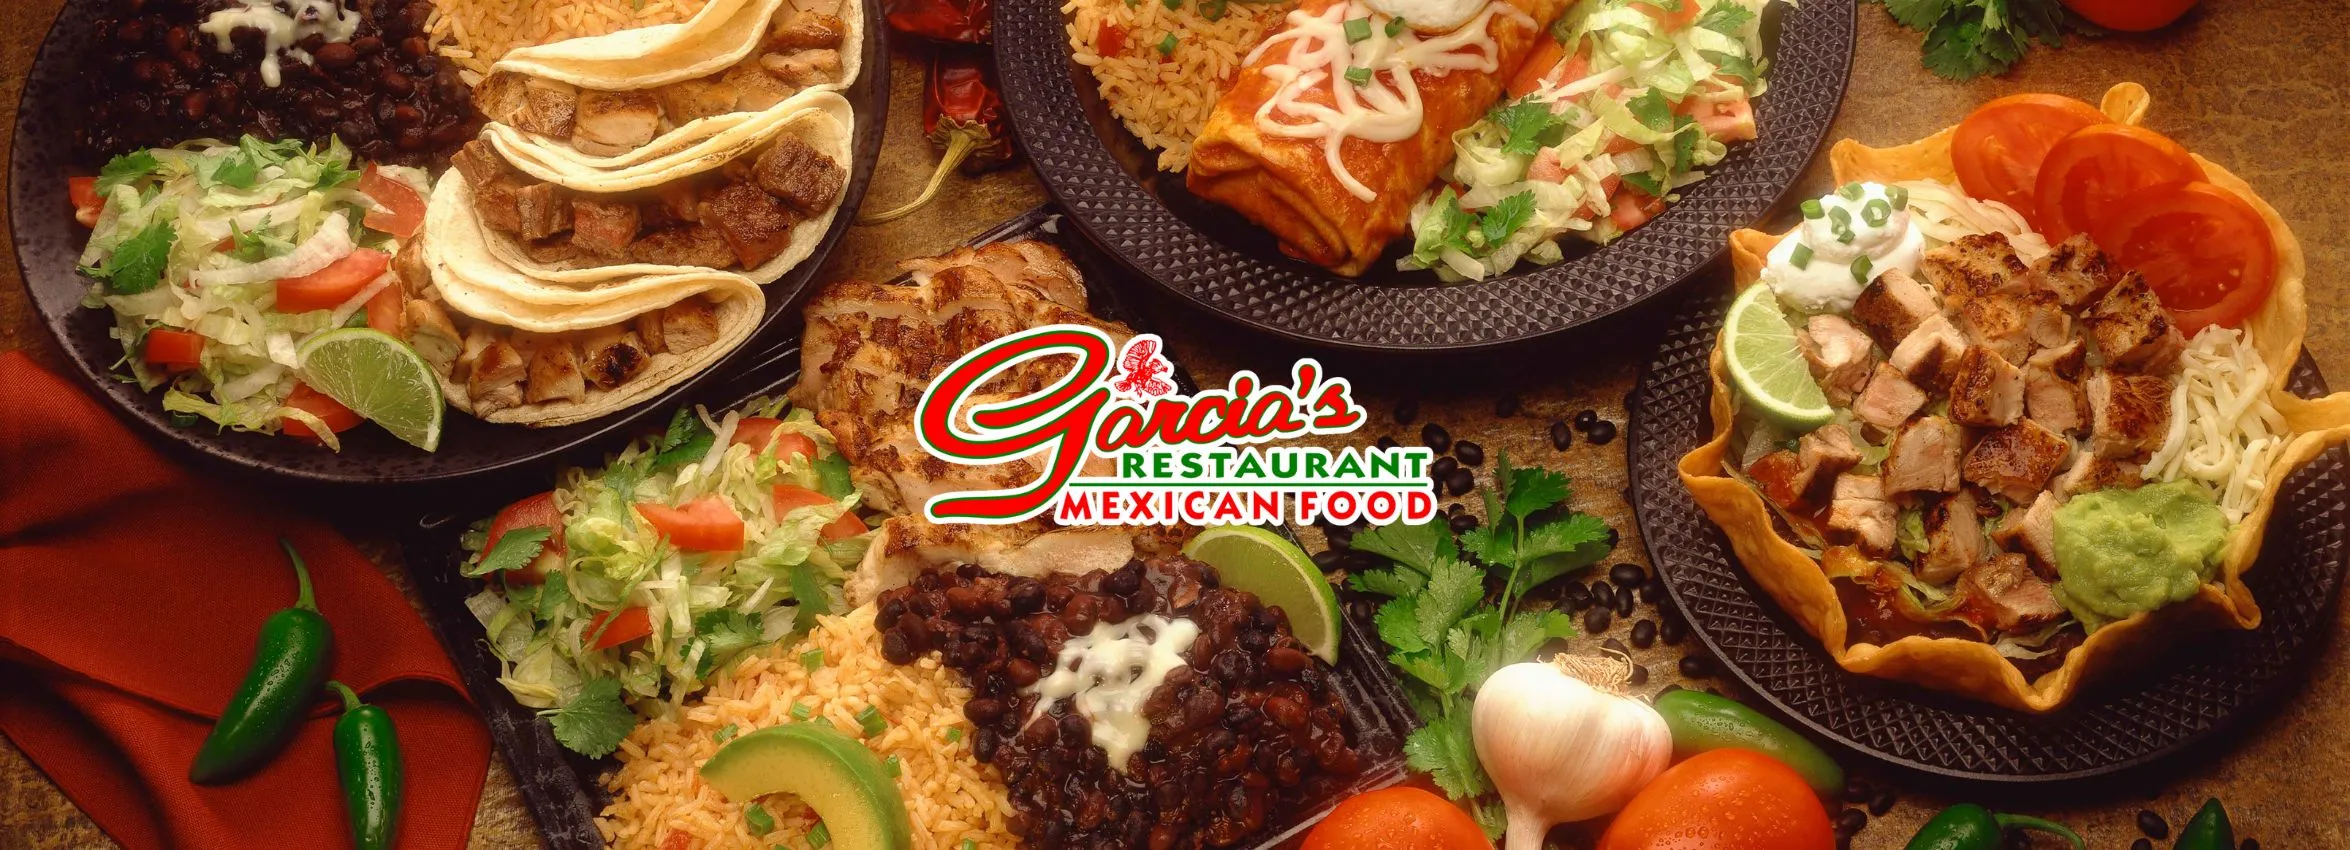 Garcia_s-Mexican-Food-Restaurant-_Desktop_ET